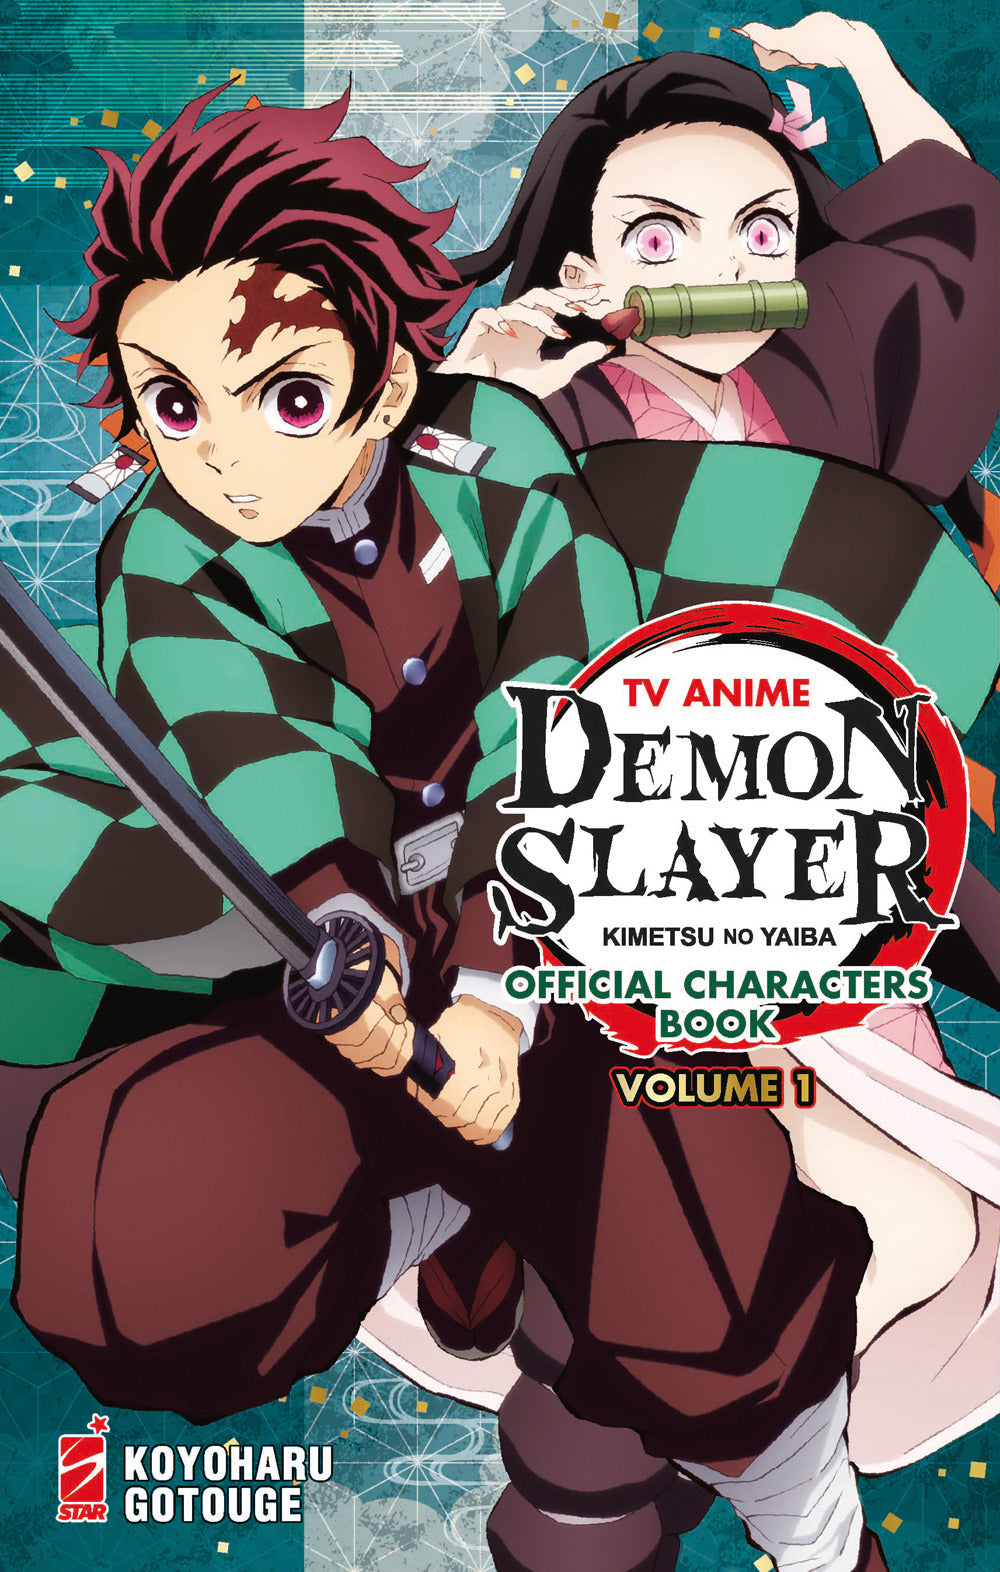 TV anime Demon slayer. Kimetsu no yaiba official character's book. Con Adesivi. Vol. 1.